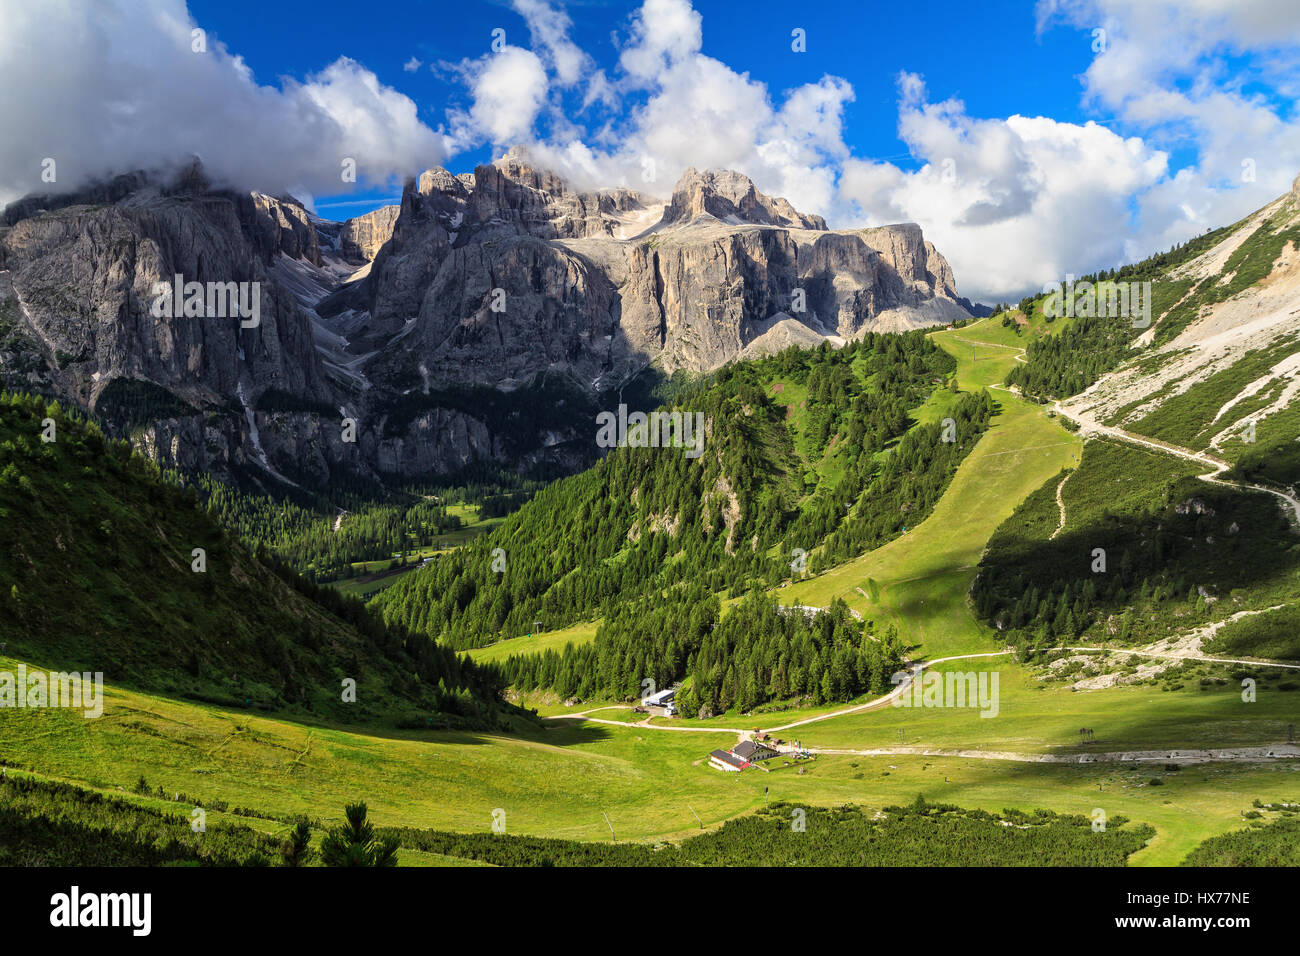 La haute vallée Badia, fond sur le mont Sella, Alto Adige, Italie Banque D'Images